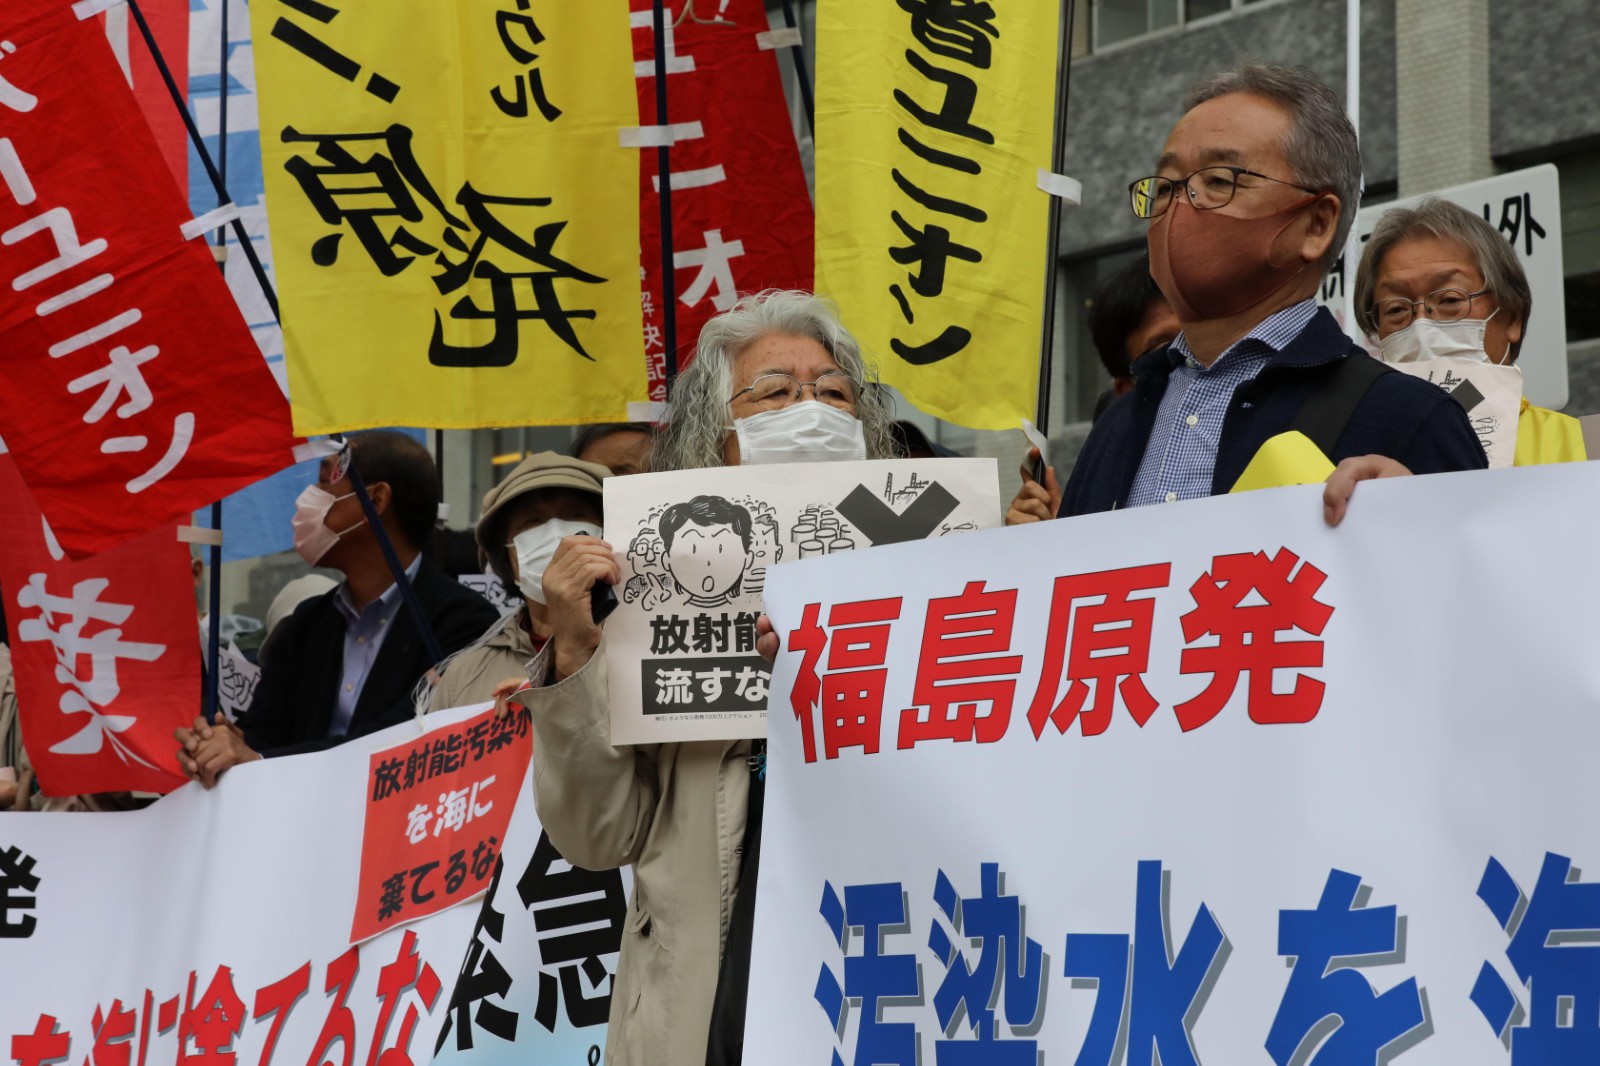 日本民众在广岛举行集会 抗议七国集团峰会